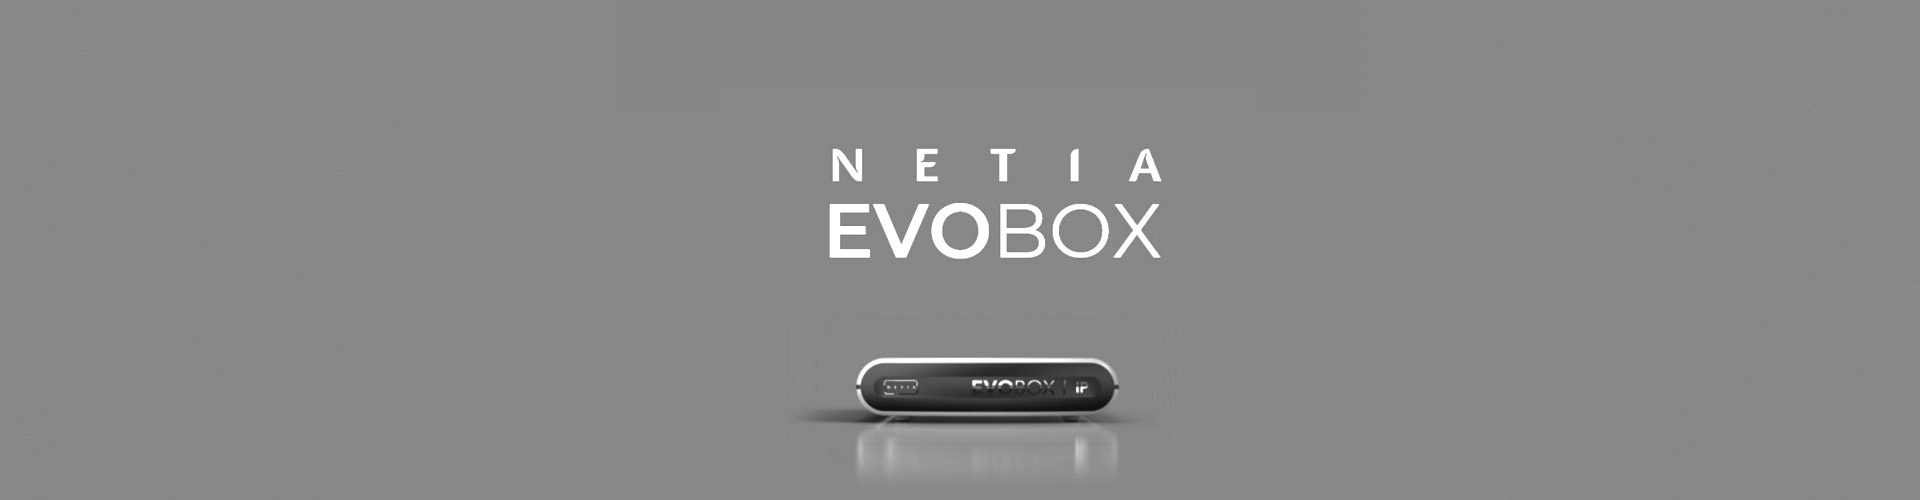 Netia Evobox 